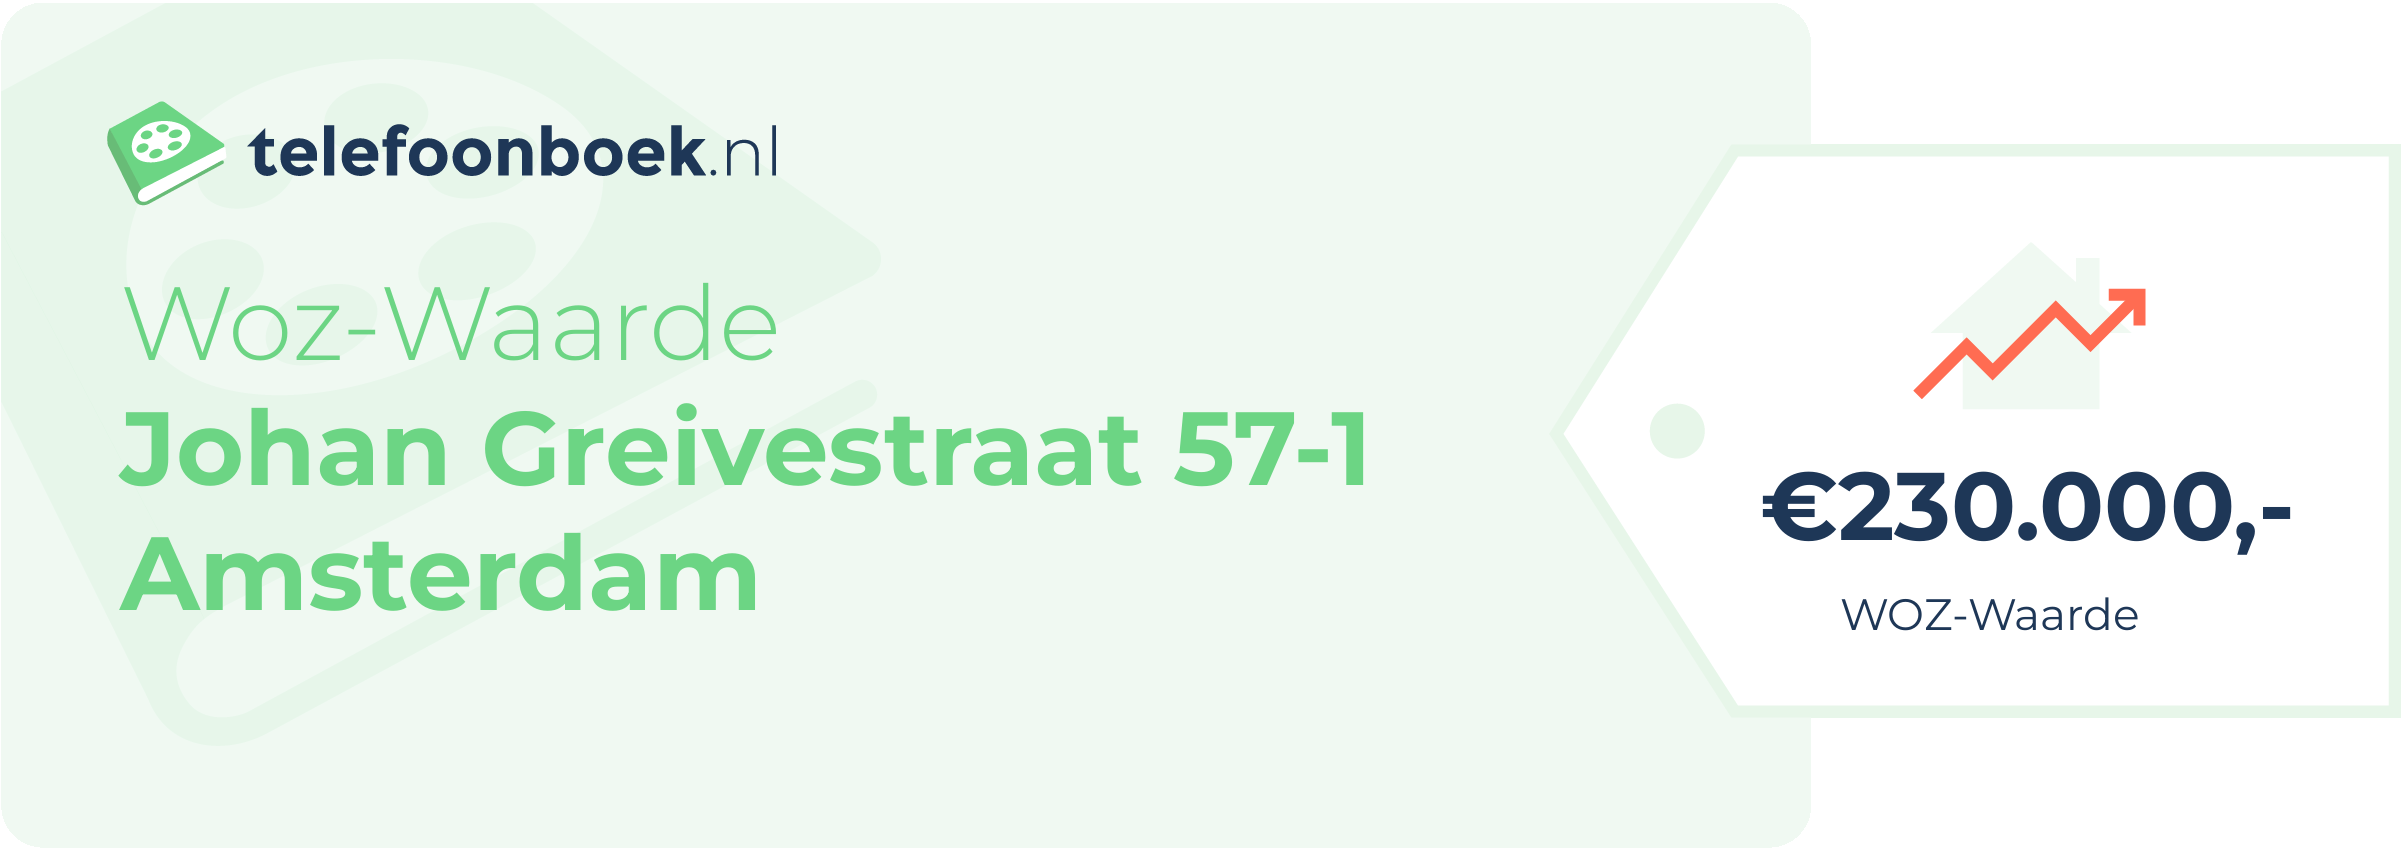 WOZ-waarde Johan Greivestraat 57-1 Amsterdam